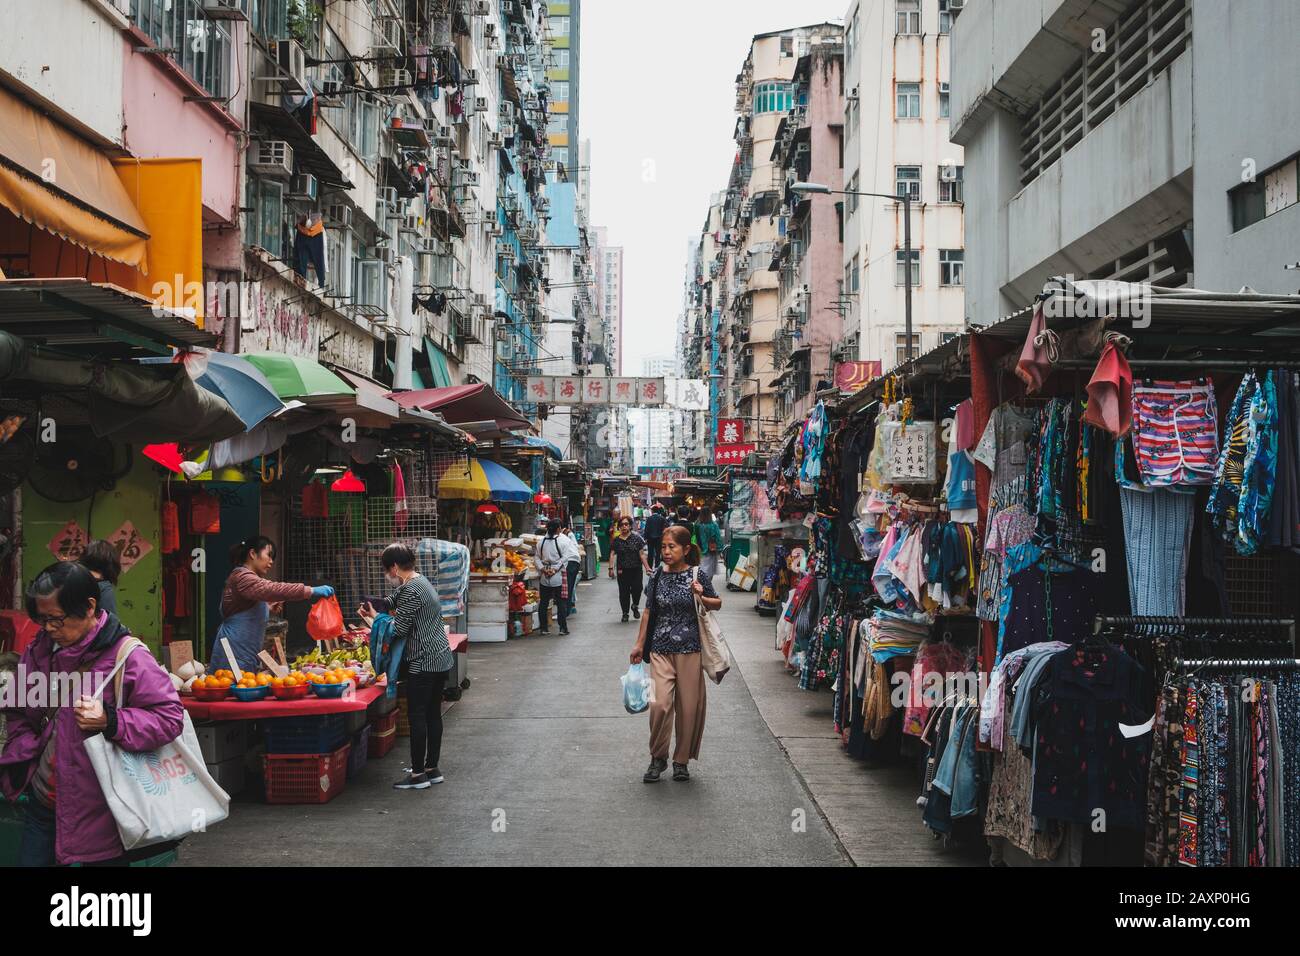 HongKong, China - November, 2019: People on street  market in Hong Kong old town Stock Photo